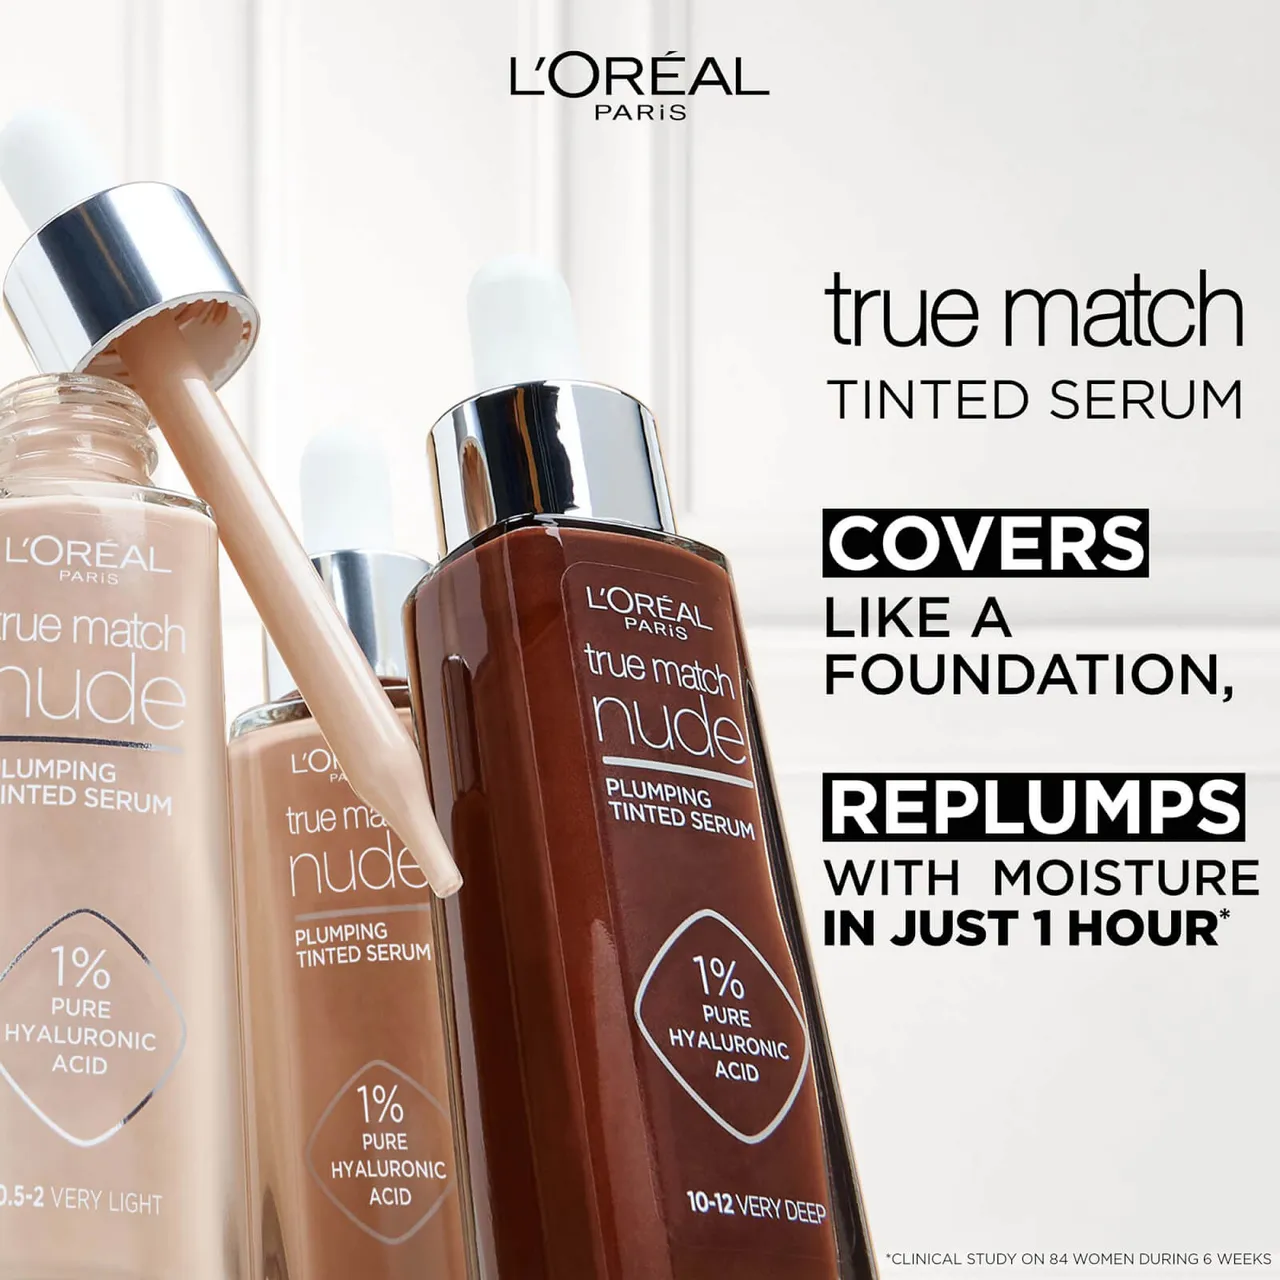 L'Oréal Paris True Match Nude Plumping Tinted Serum (Various Shades) - 5-6 Medium Tan